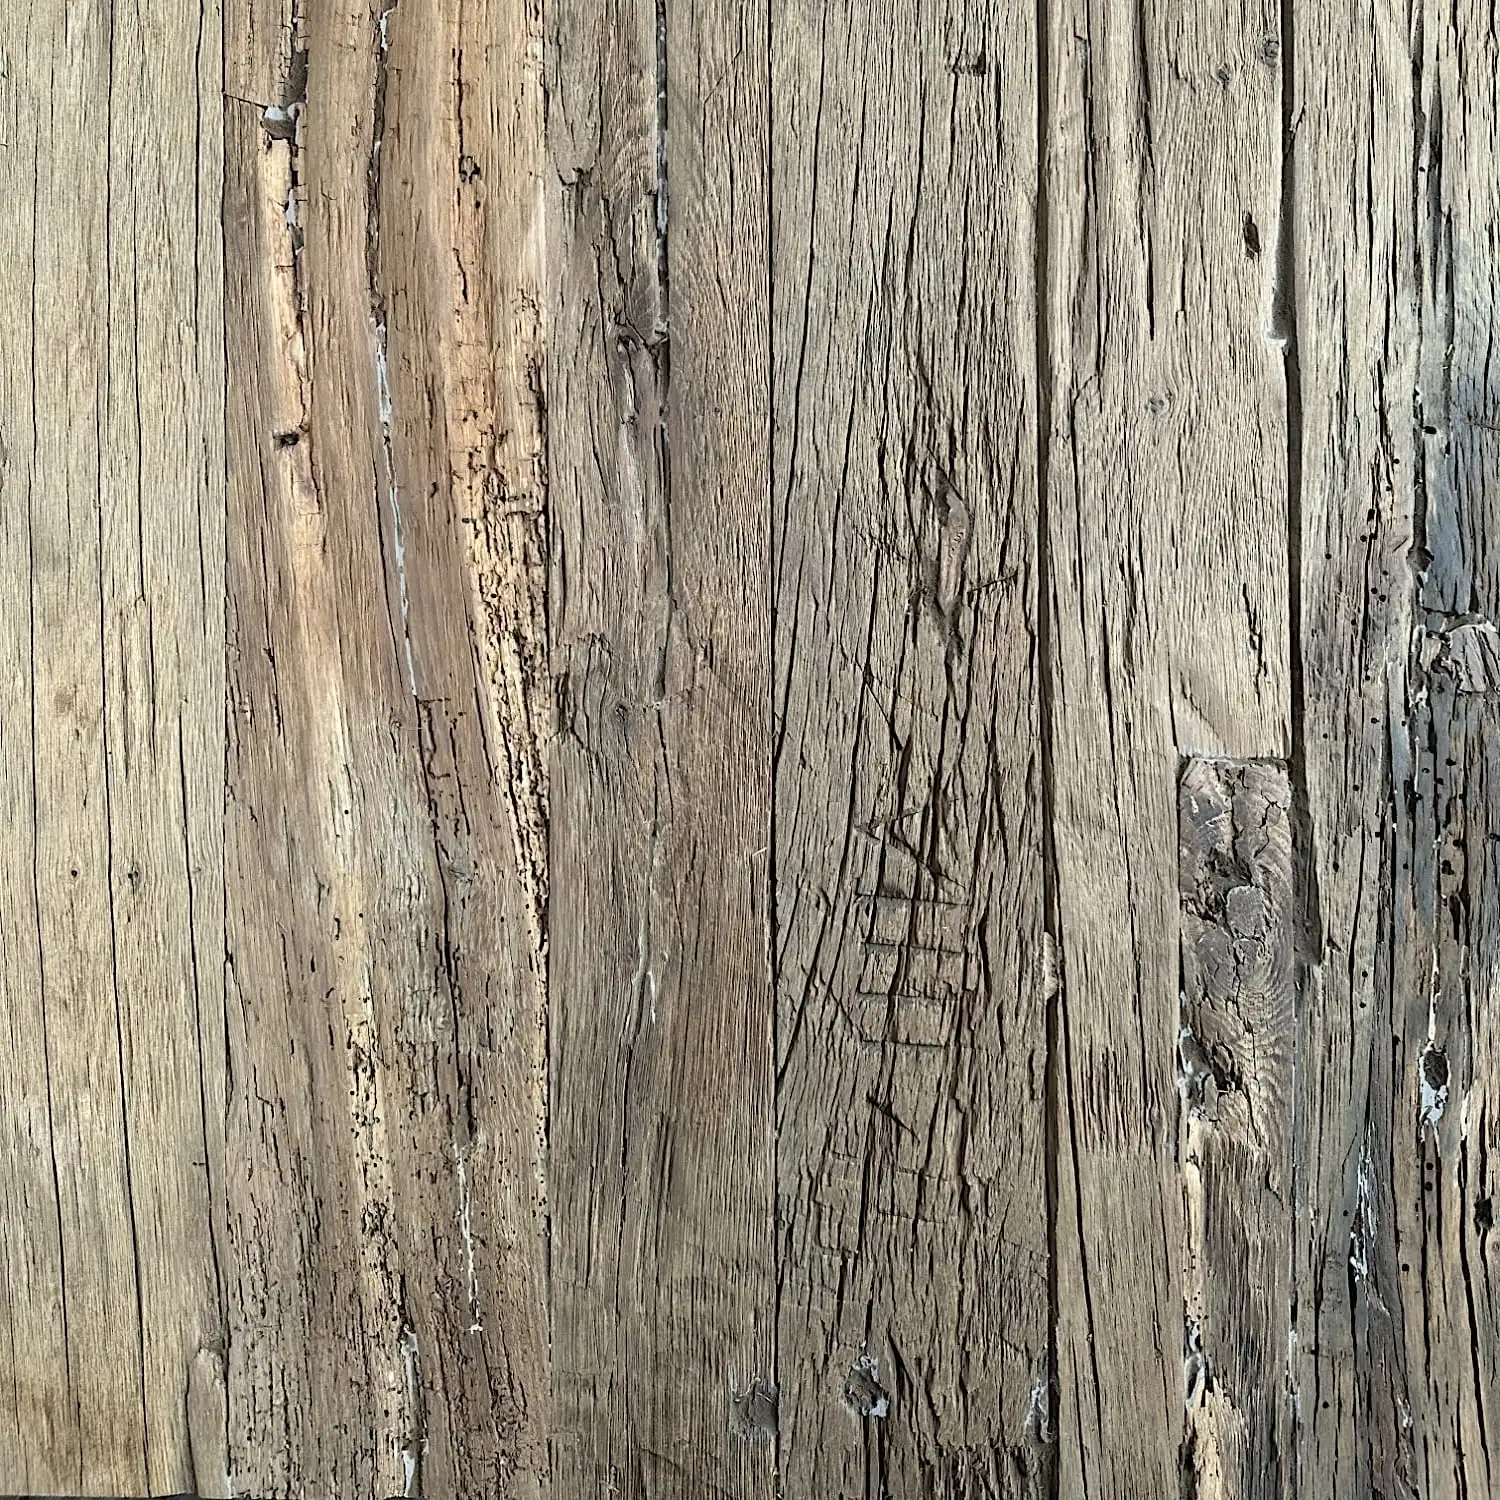  Gros plan d'une planche de bois vieillie avec des fissures profondes et une texture riche, montrant des motifs de grain naturel et des intempéries provenant d'un panneau 5 plis. 